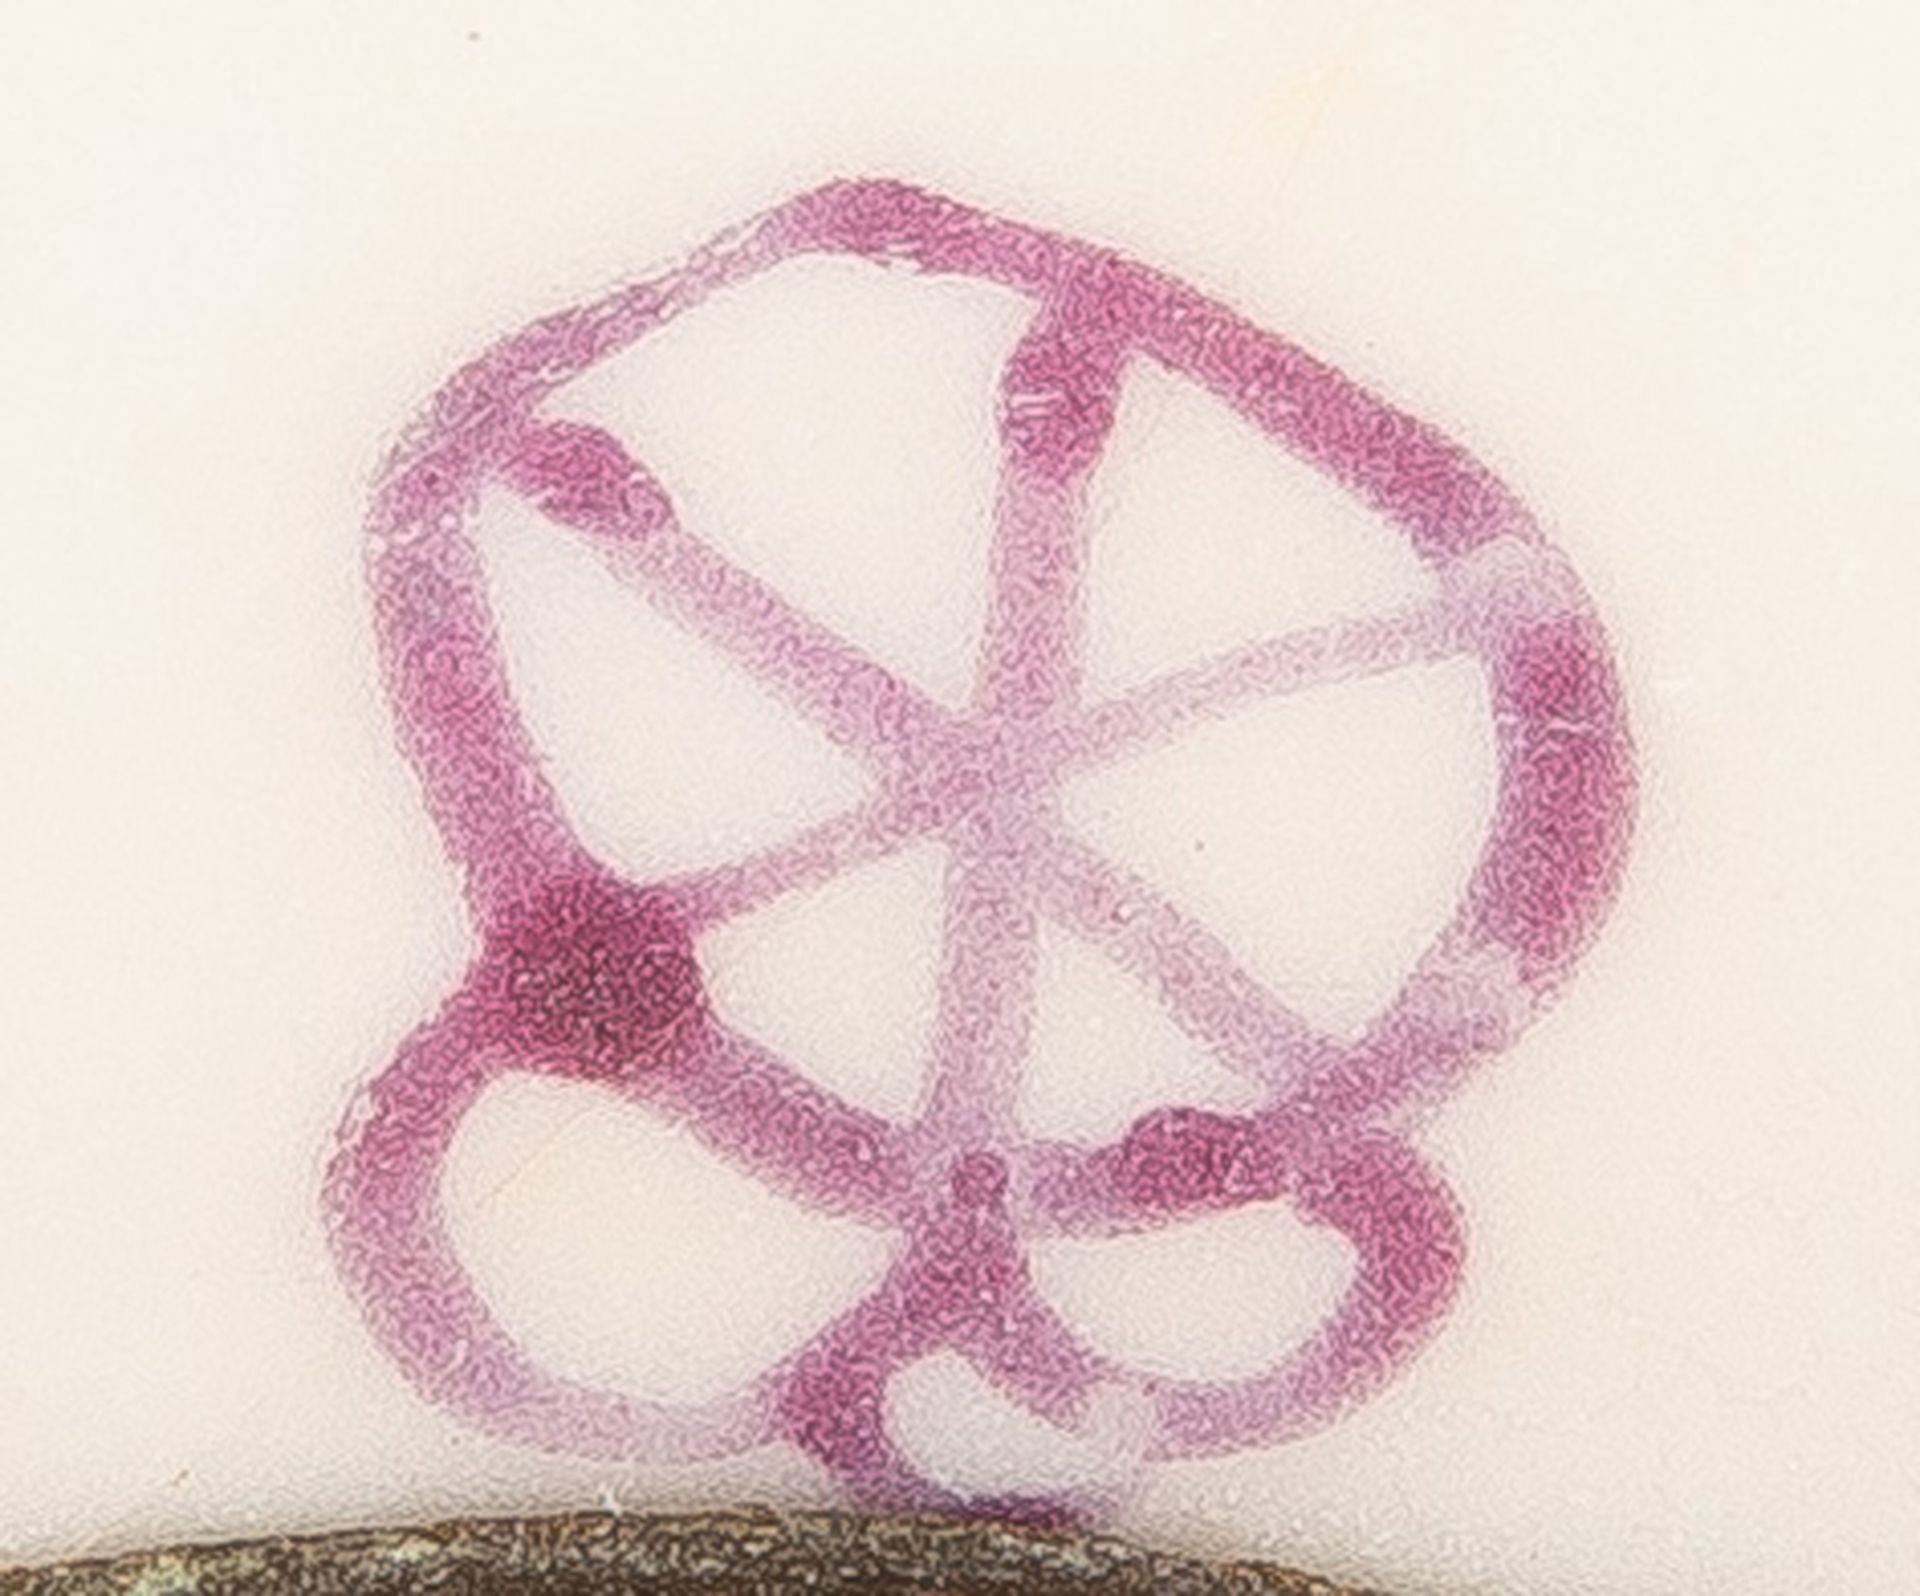 Kleiner Tafelaufsatz. Deutsch 19. Jh. Porzellan, bunt floral bemalt, am Boden purpurfarbene - Bild 2 aus 2